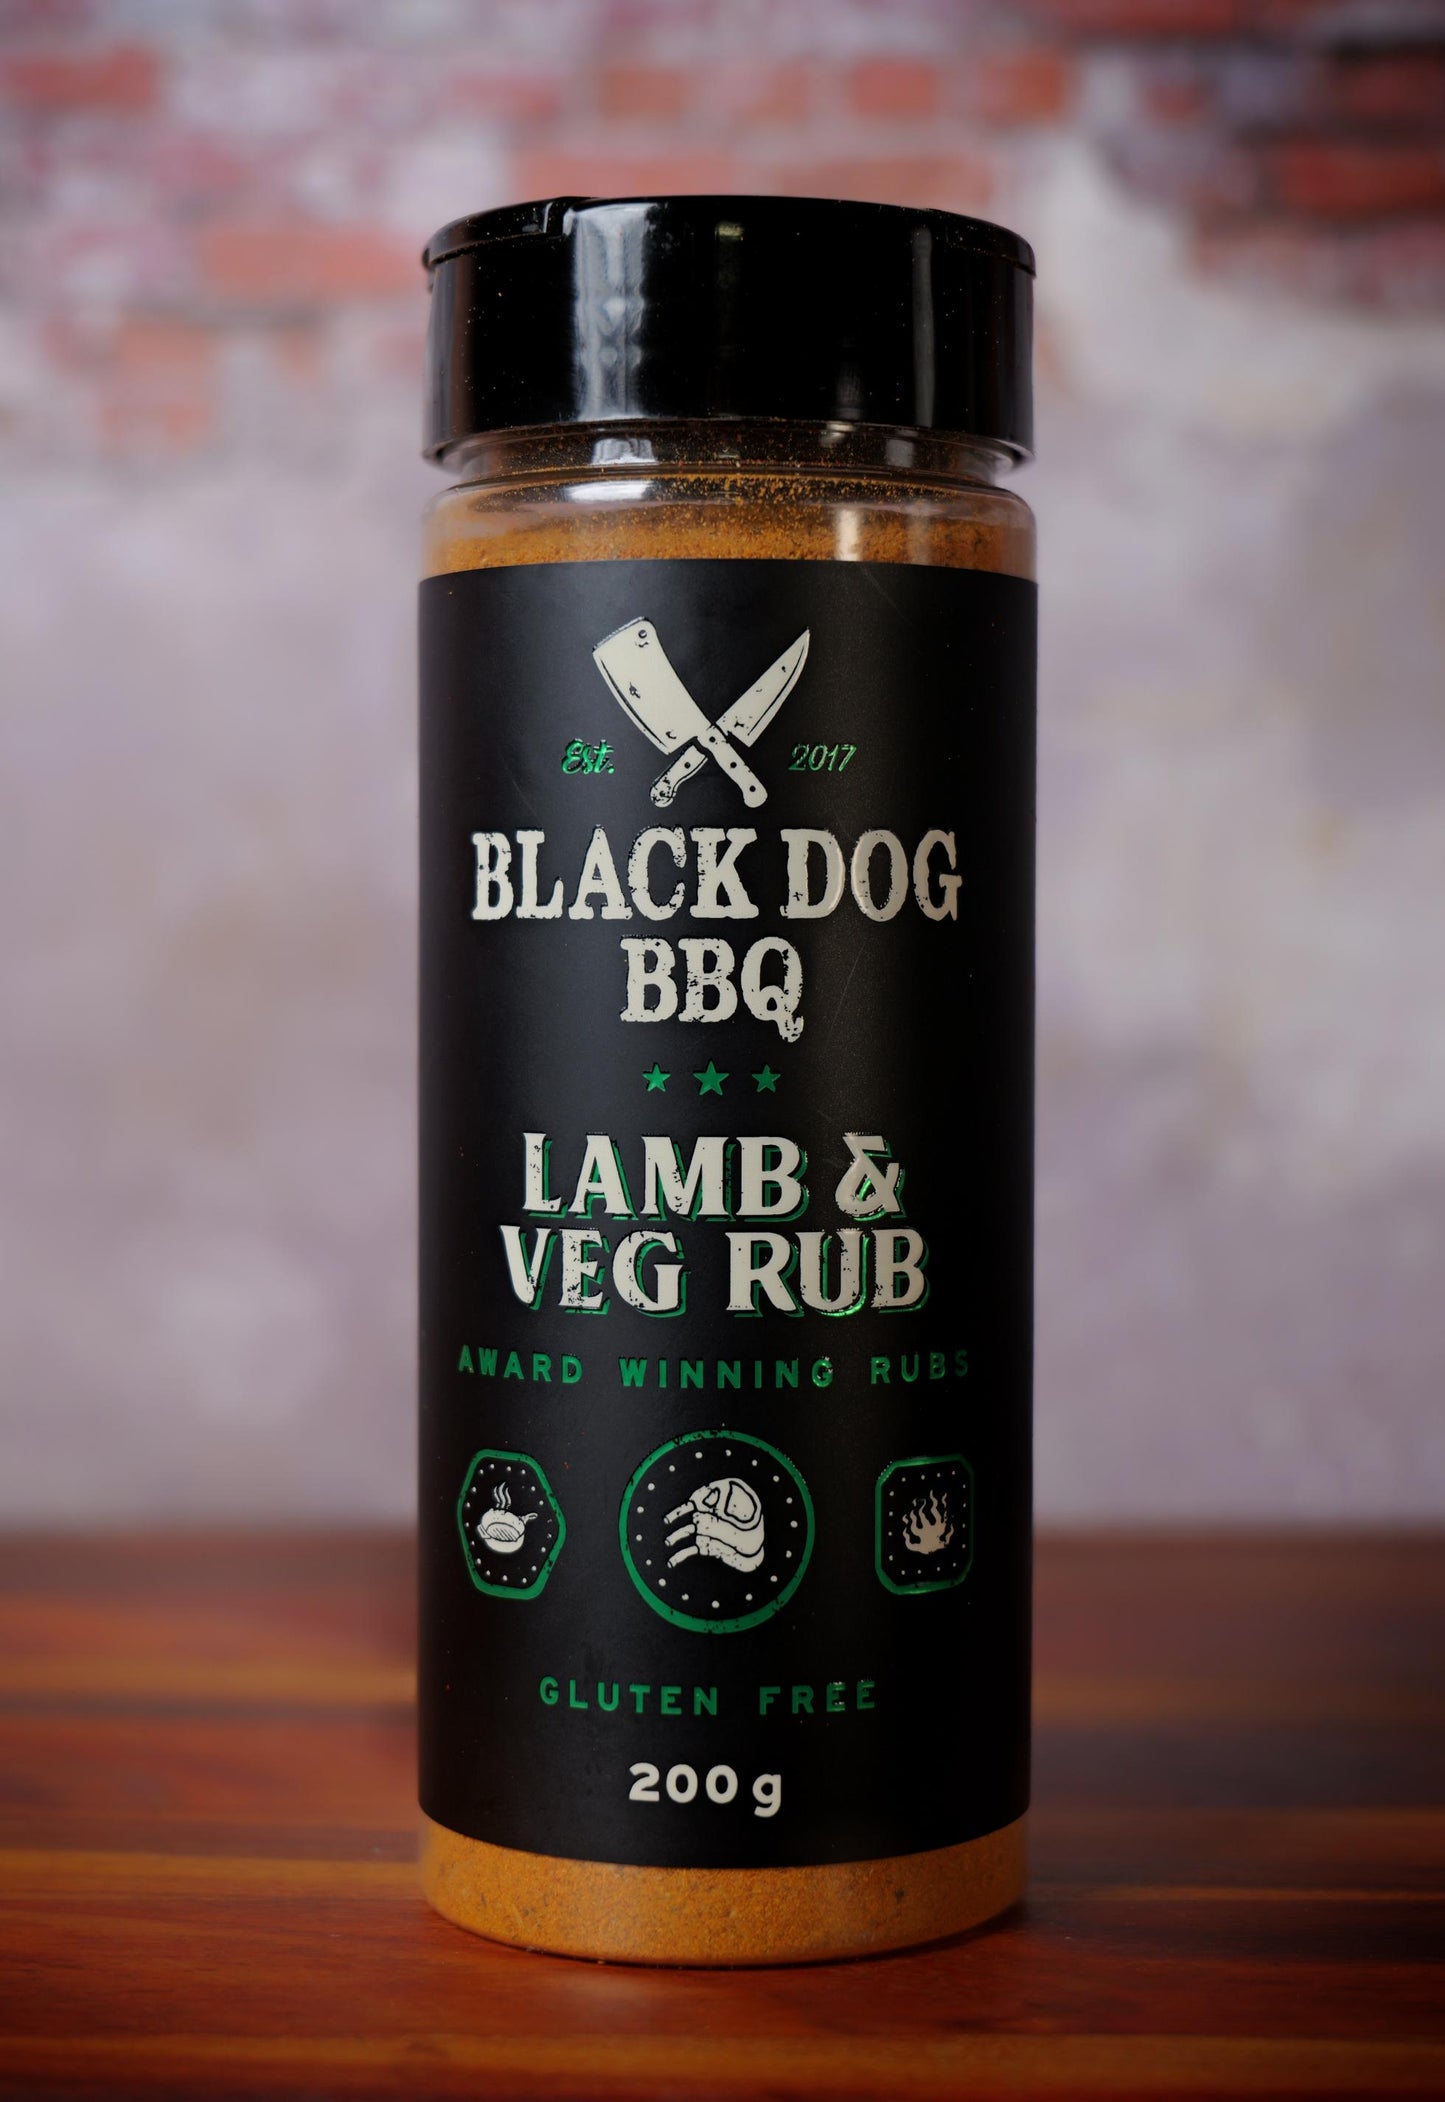 Black dog BBQ lamb & veg rub